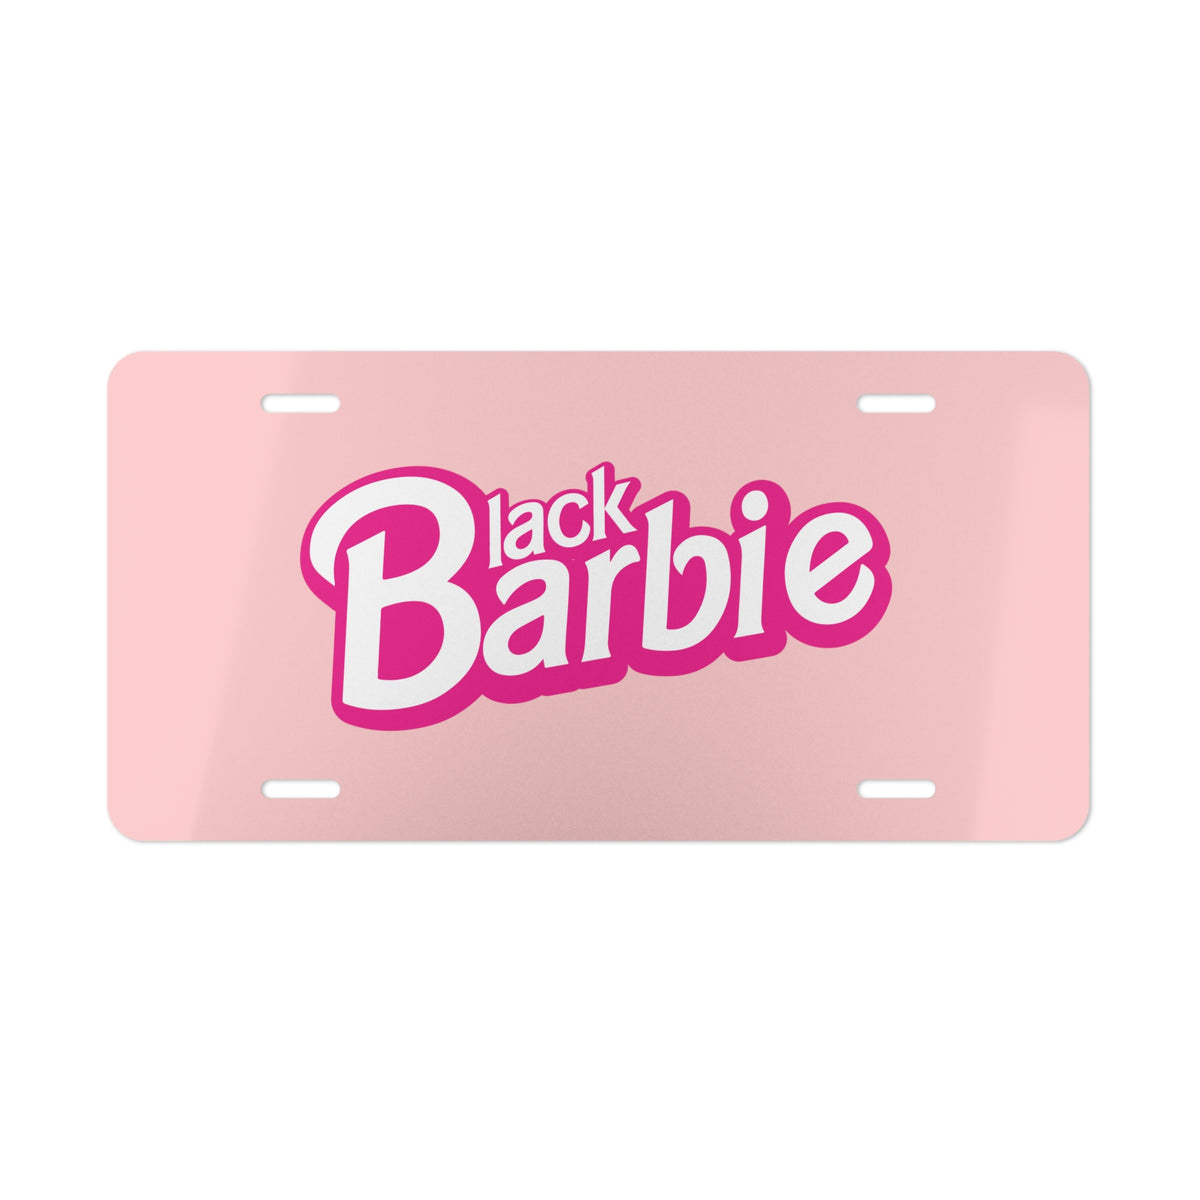 Black Barbie Vanity Plate